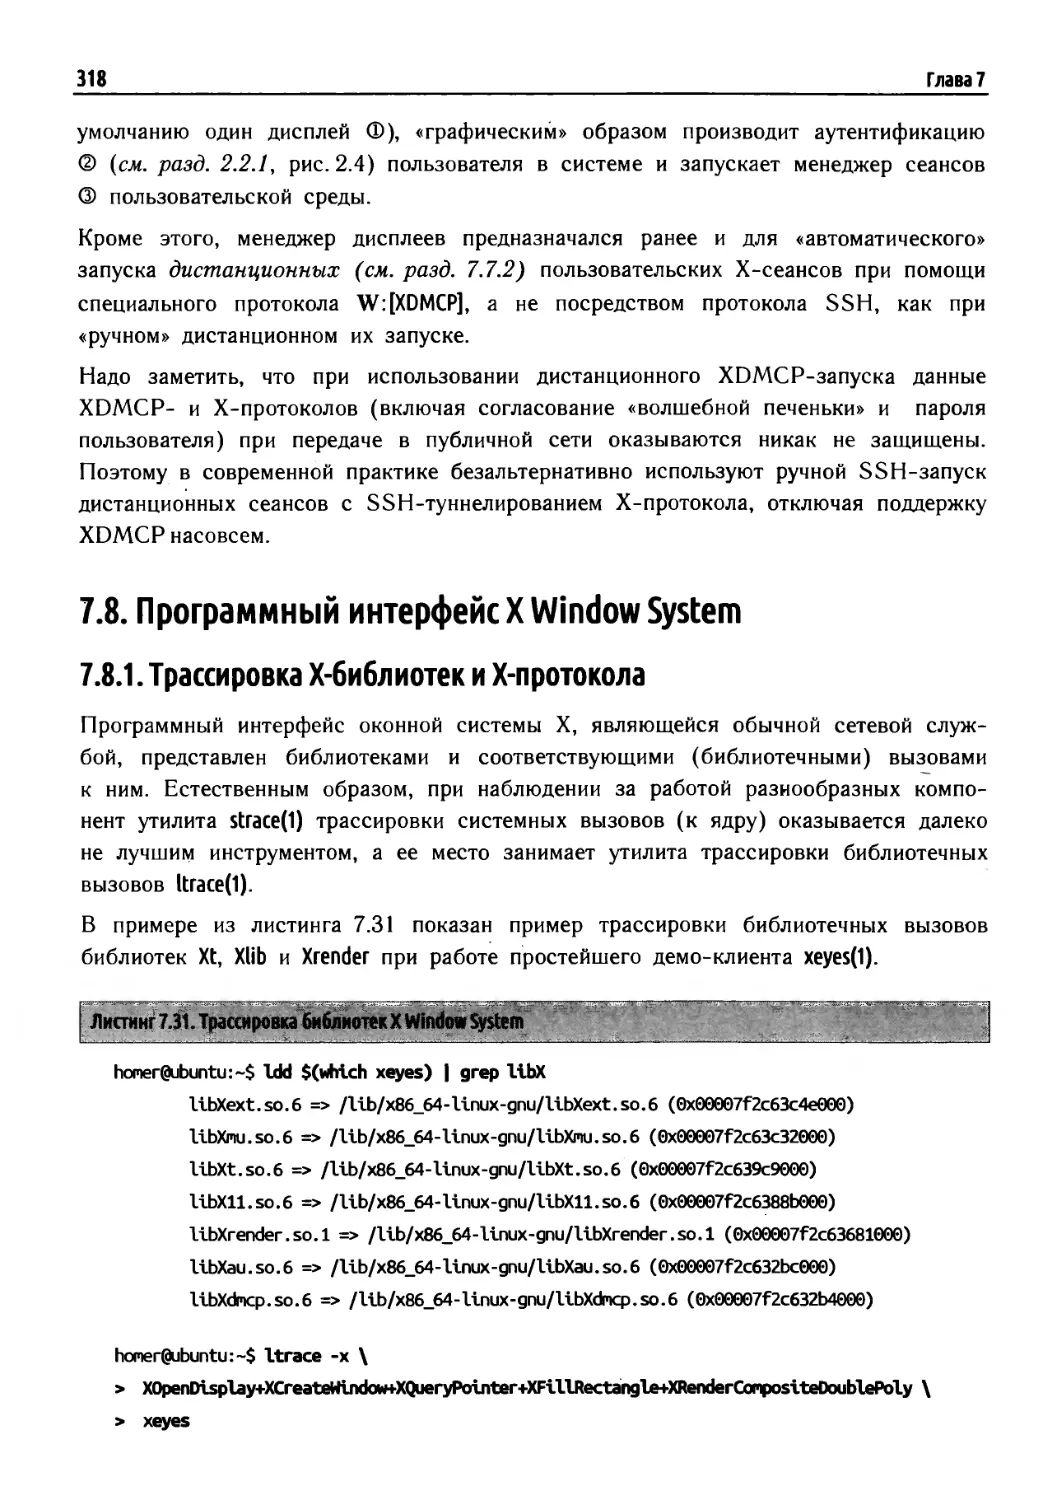 7.8. Программный интерфейс X Window System